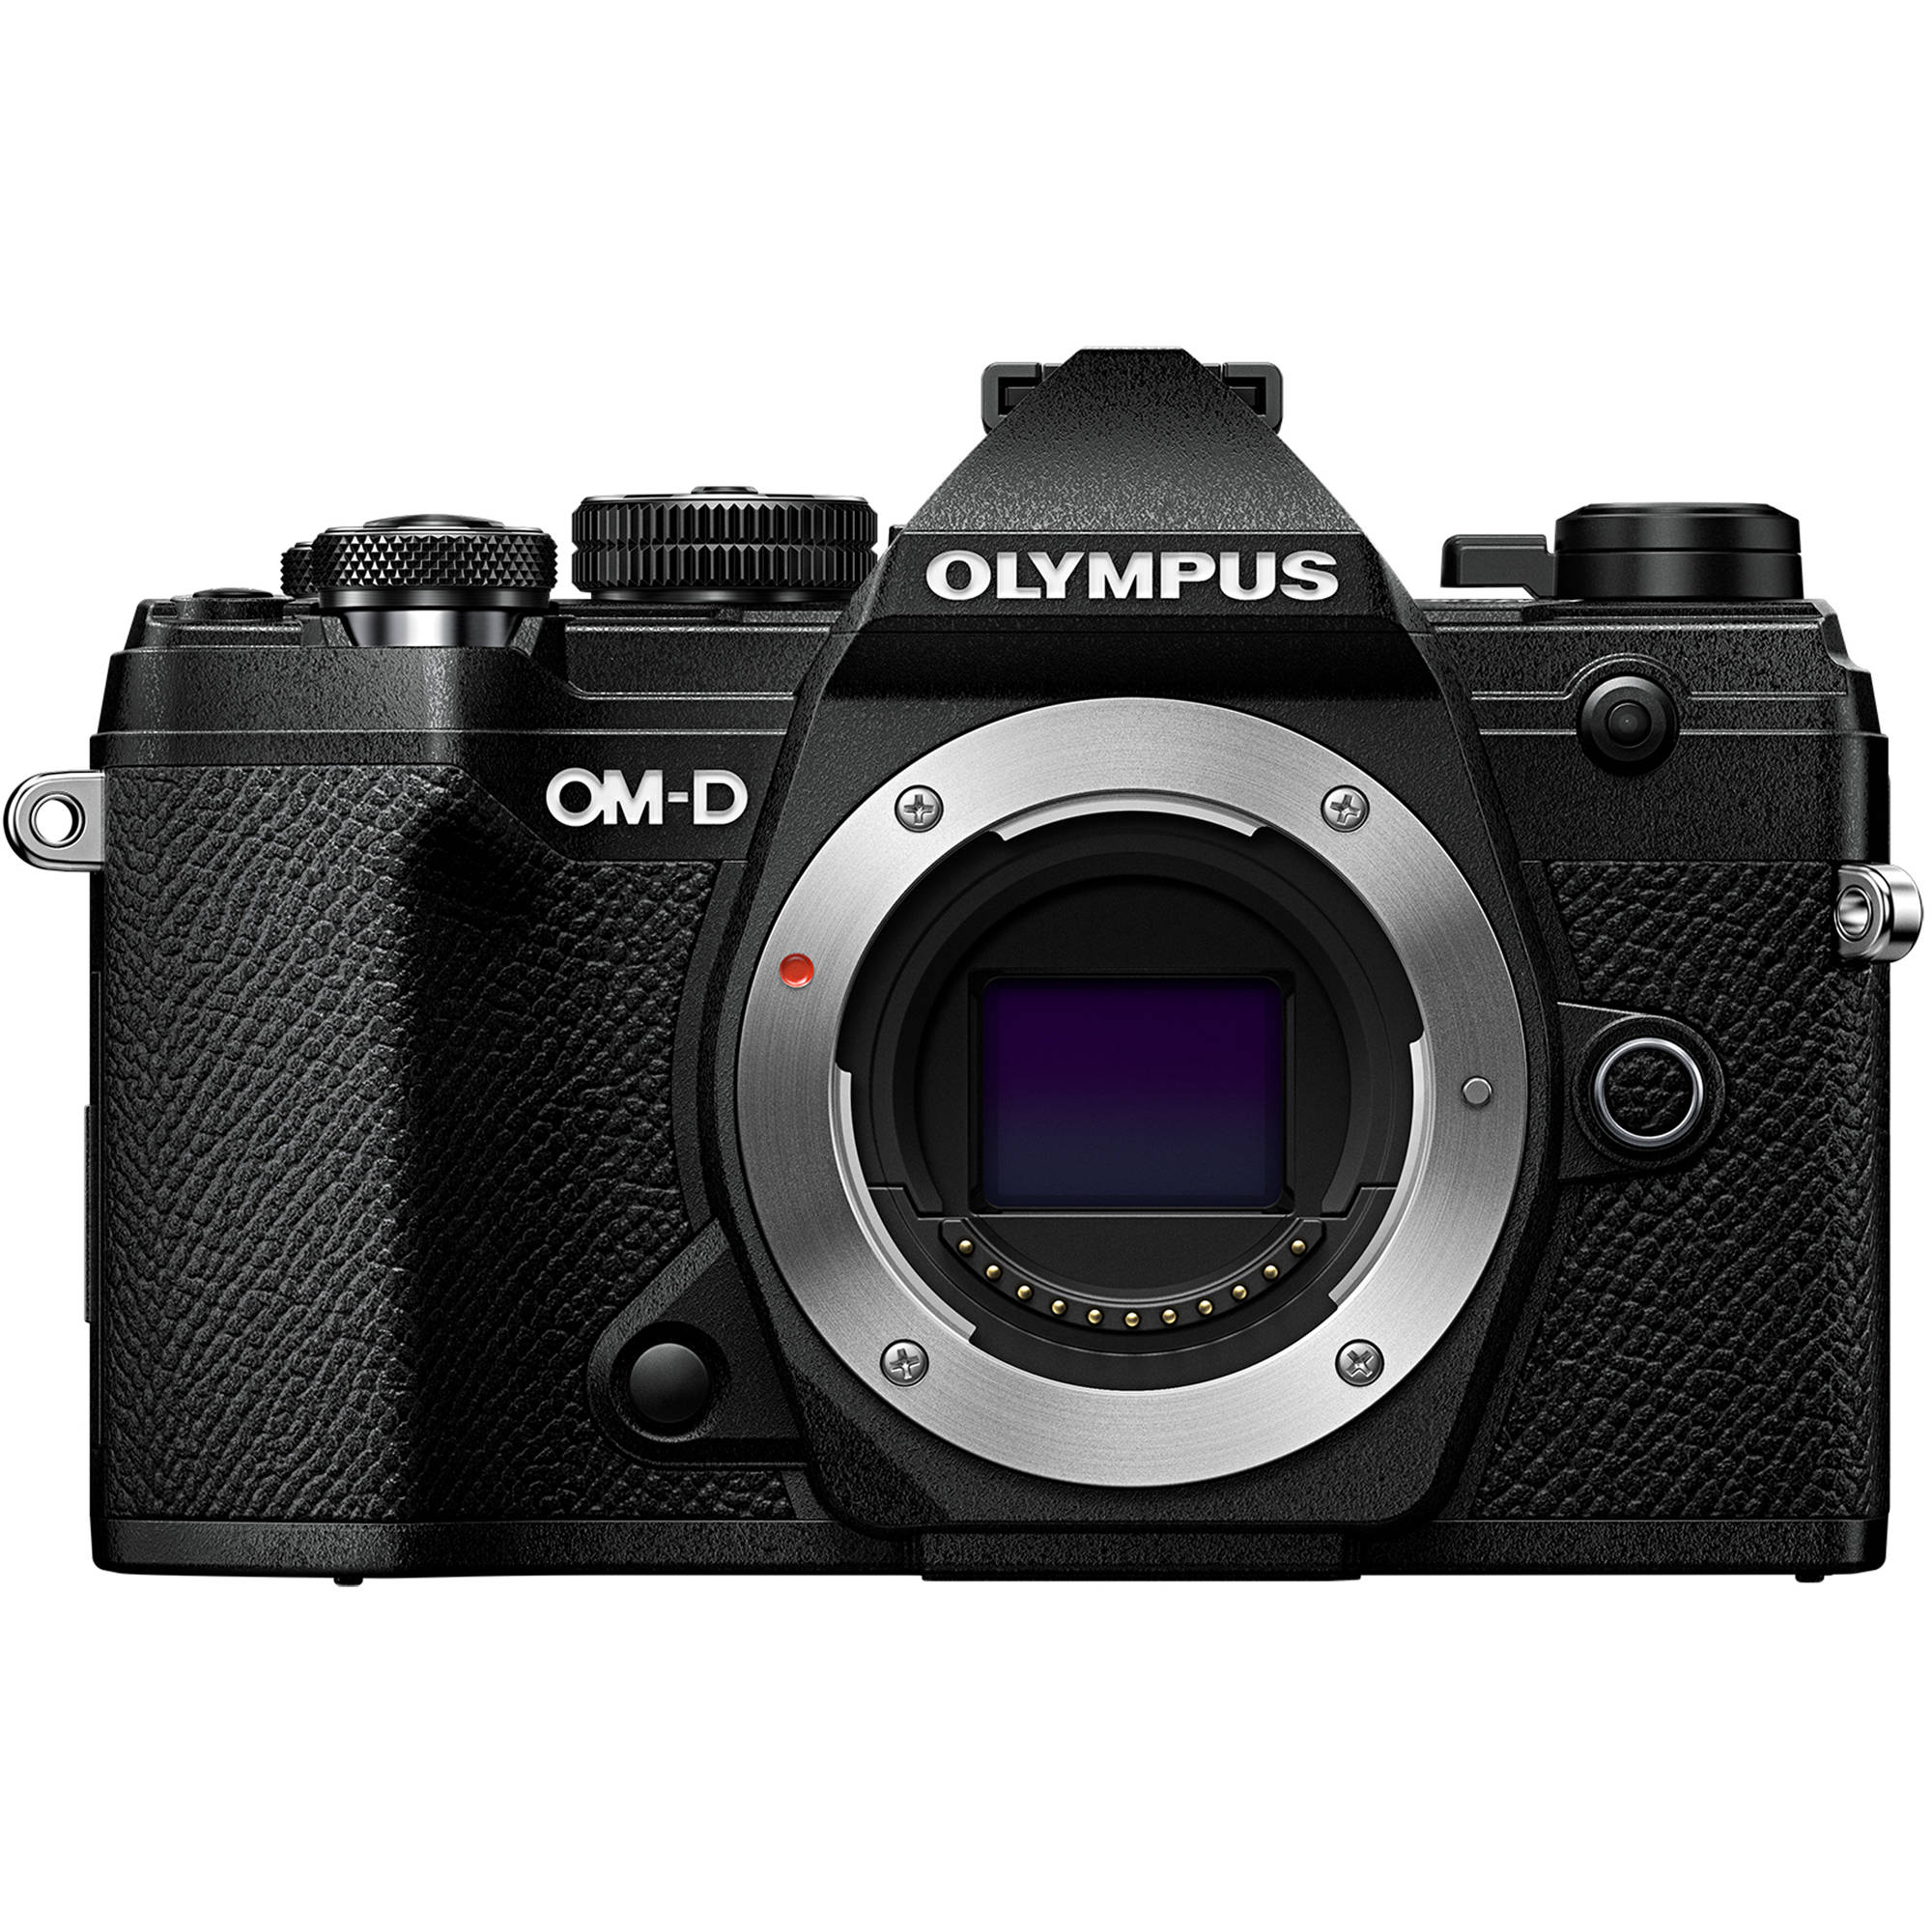 奧林巴斯Olympus OM-D E-M5 Mark III 相機(黑色) 可換鏡頭式數碼相機